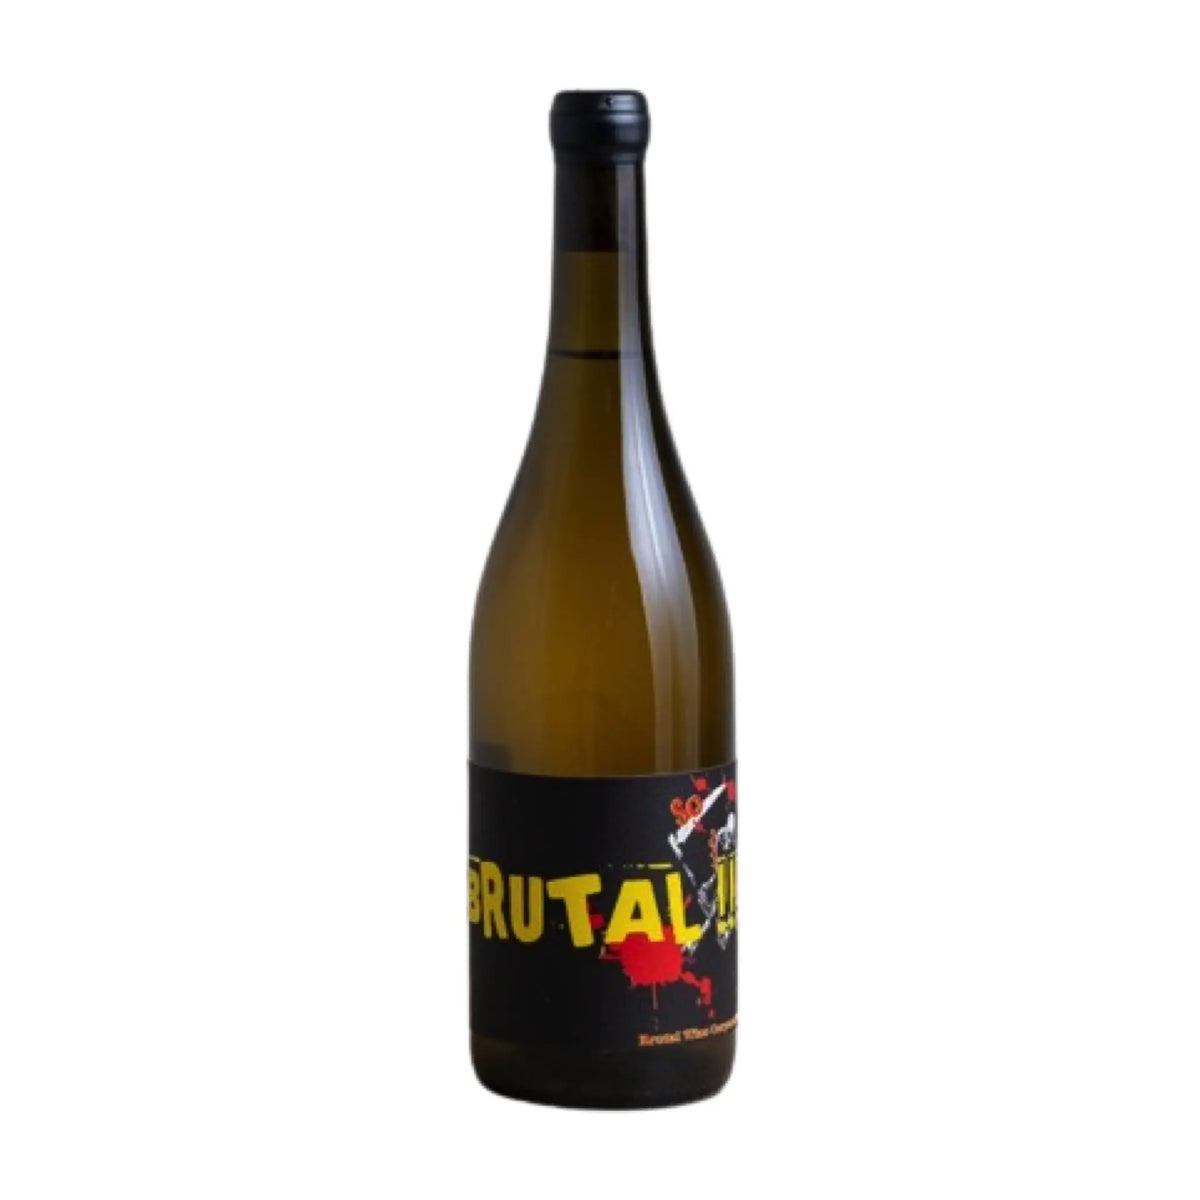 Vega Aixalà-Orange Wein-Orange Wein-Spanien-Katalonien-2022 Brutal-WINECOM